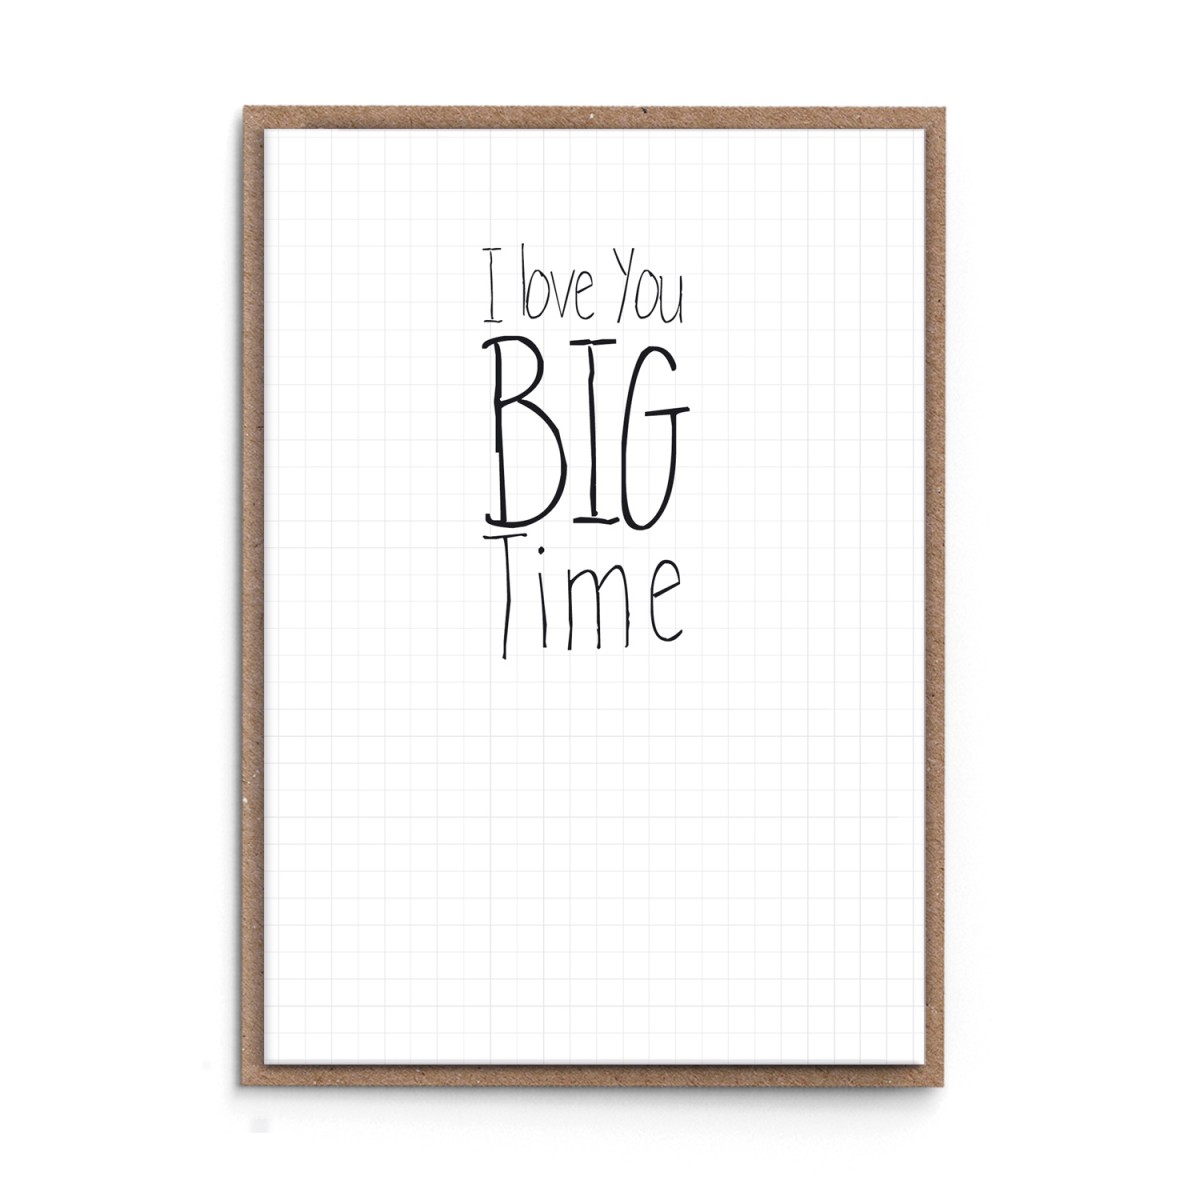 sonst noch was? Grußkarte "I love you BIG TIME"